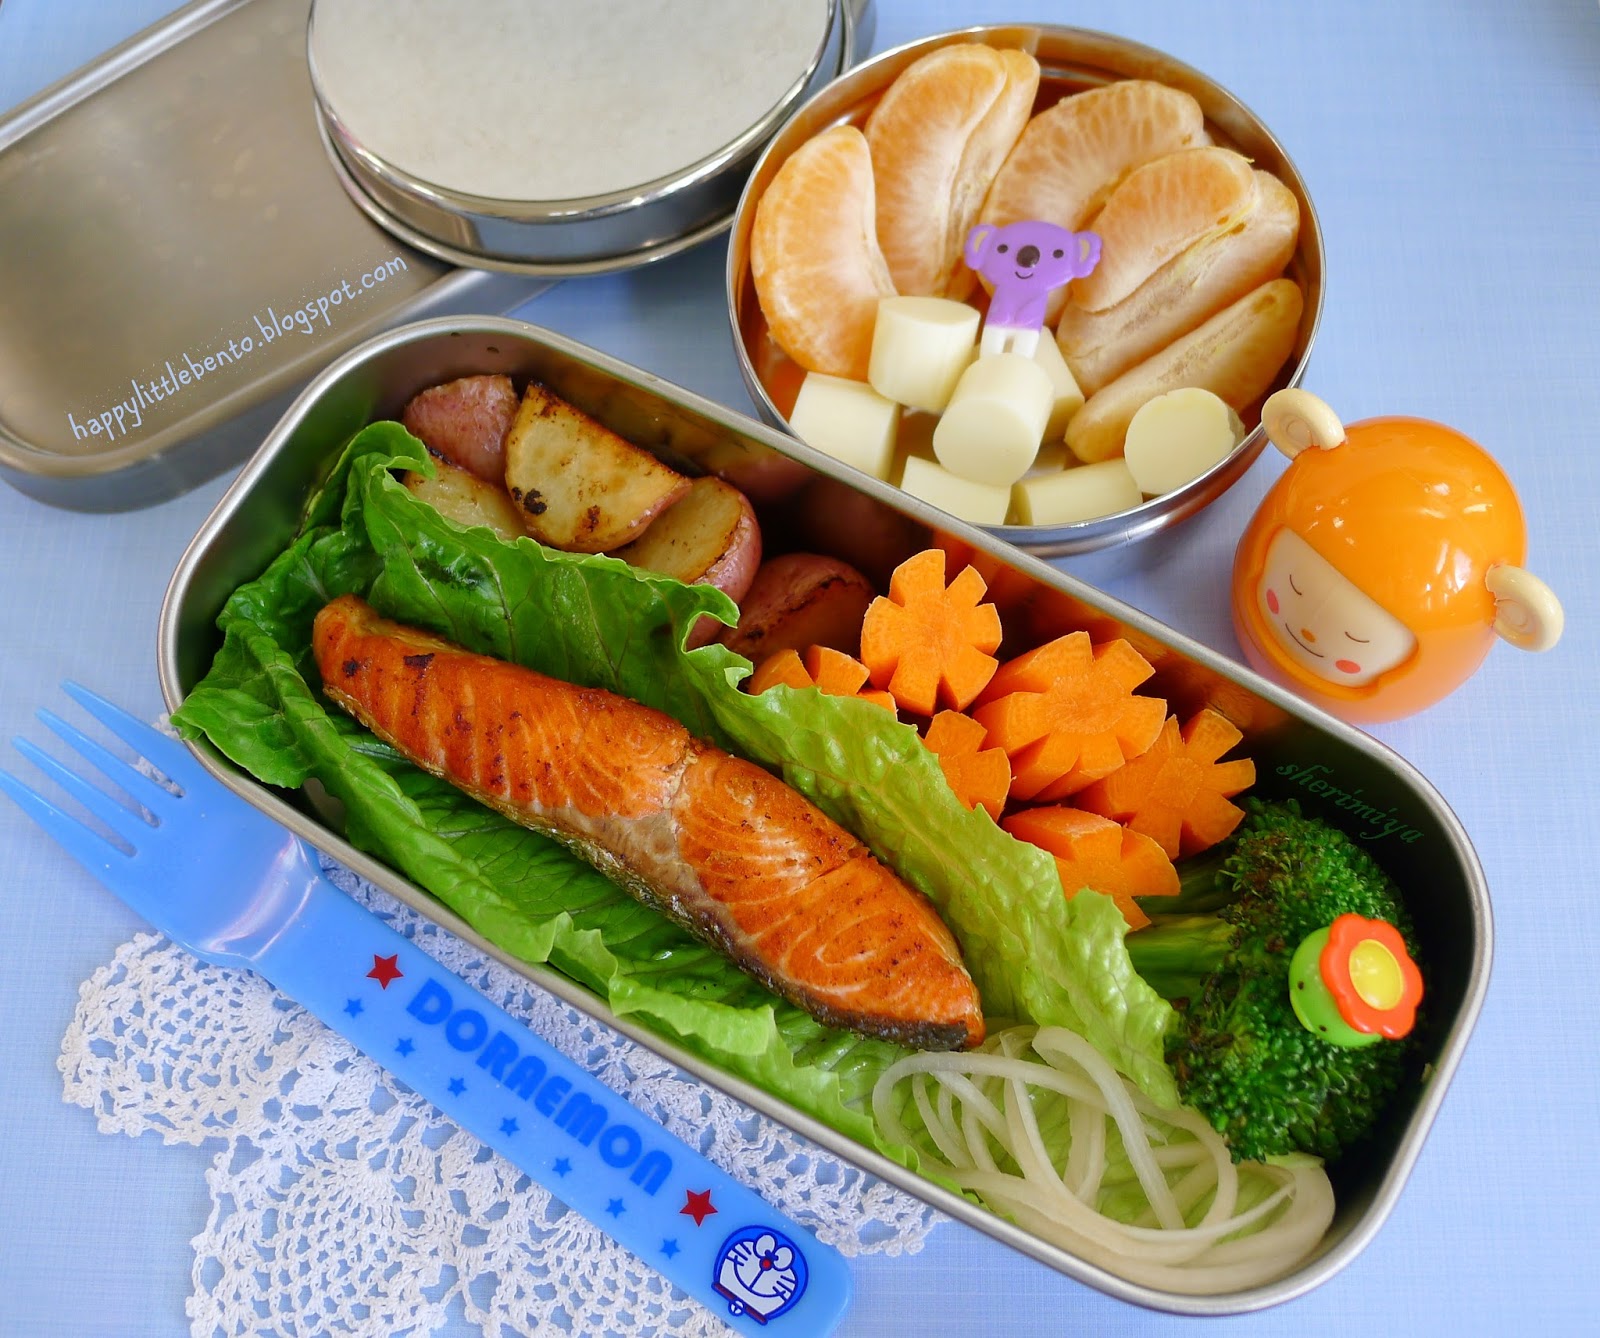 Satsuma bento lunch box